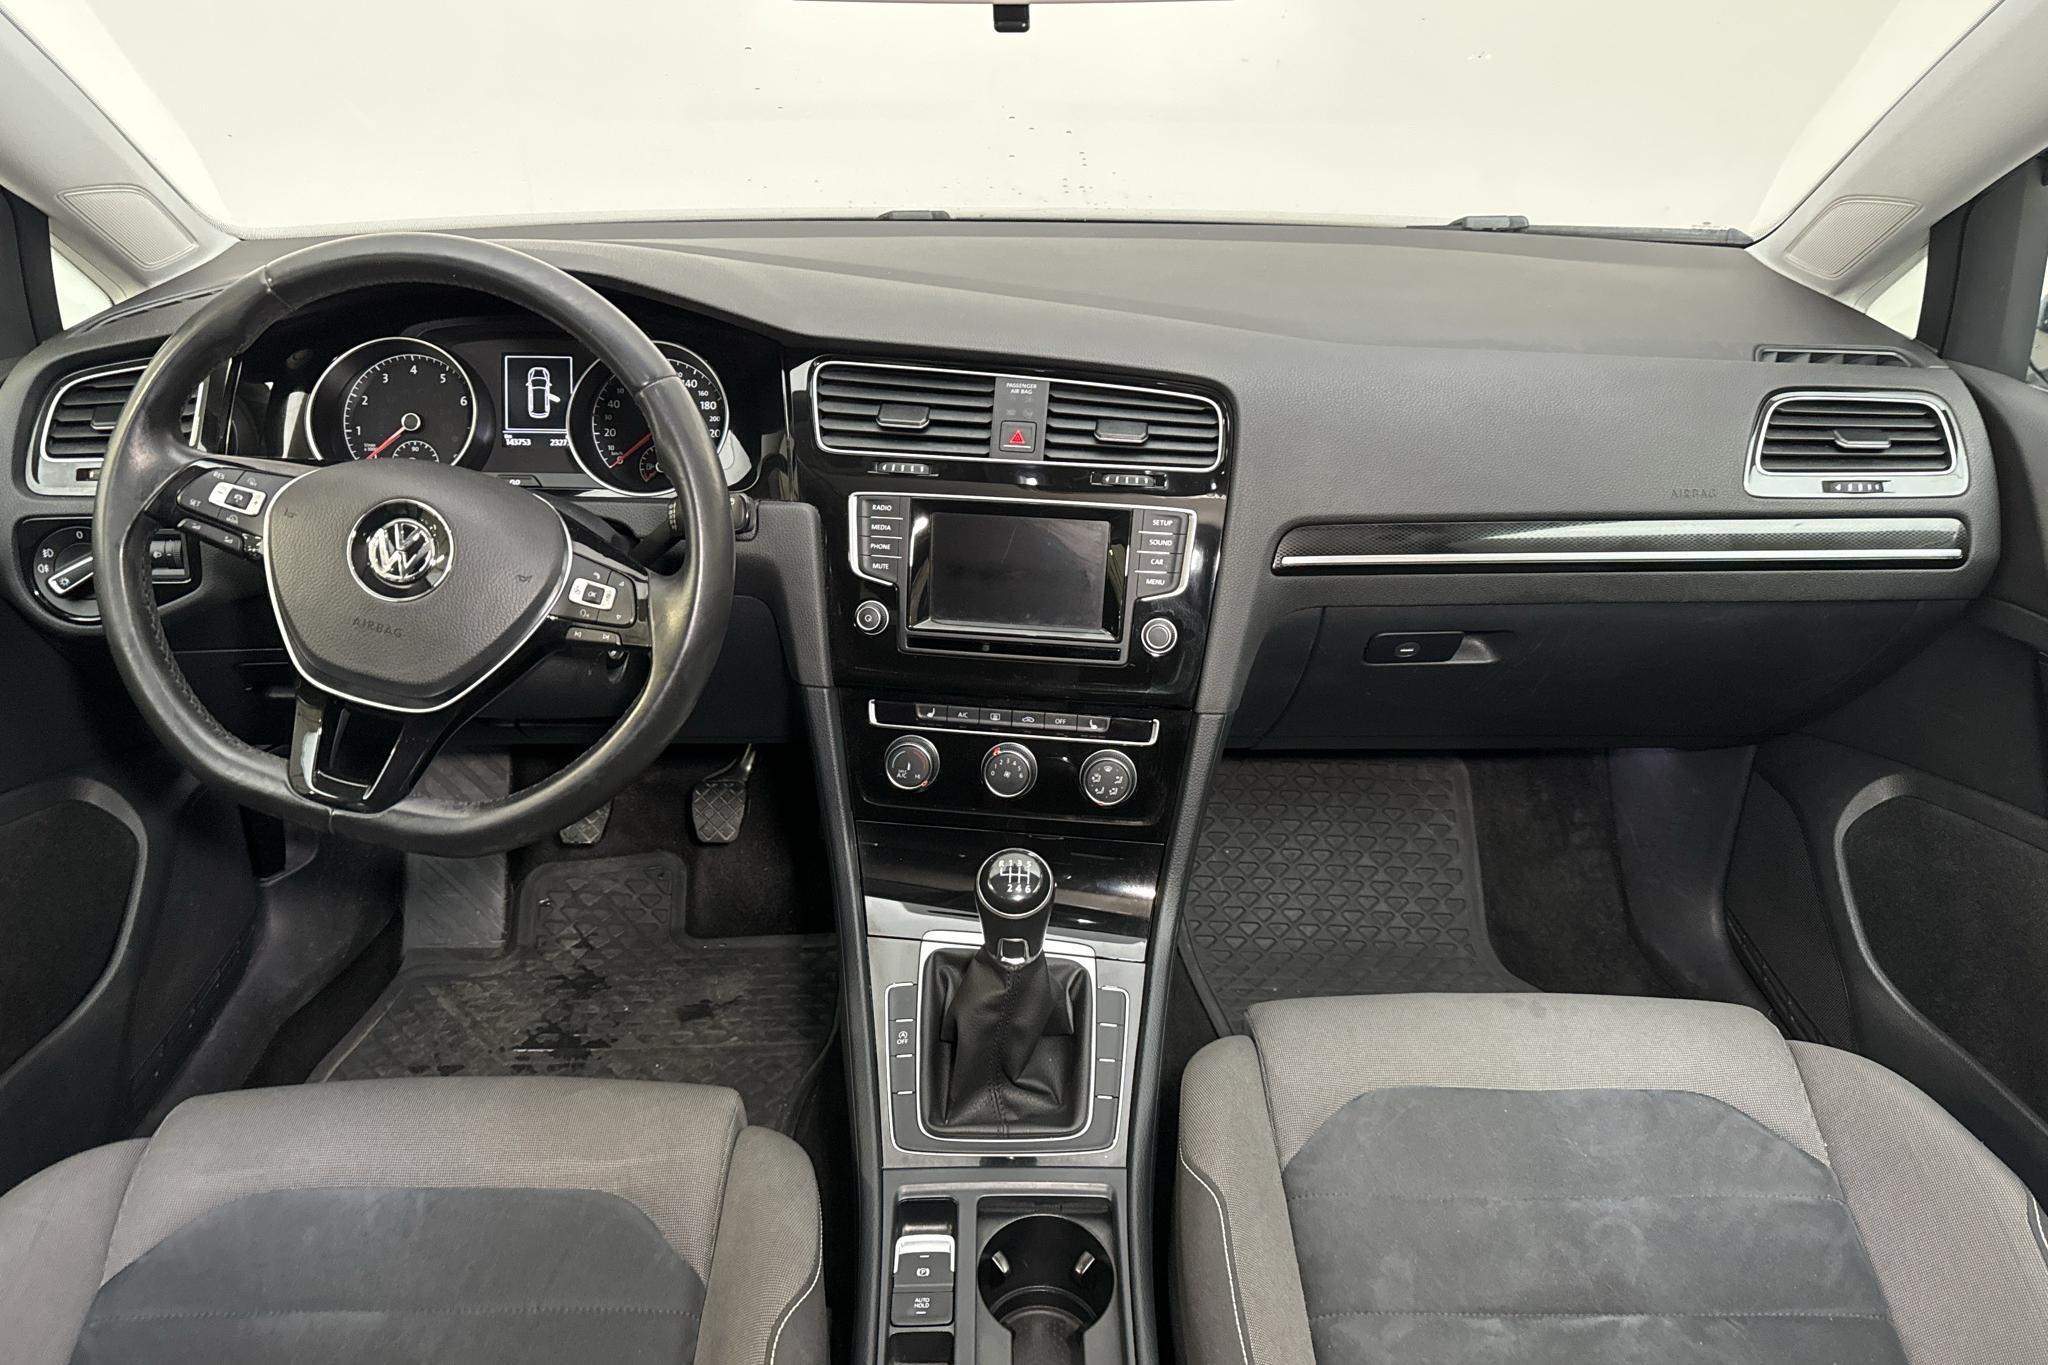 VW Golf VII 1.4 TSI Sportscombi (140hk) - 14 375 mil - Manuell - blå - 2015